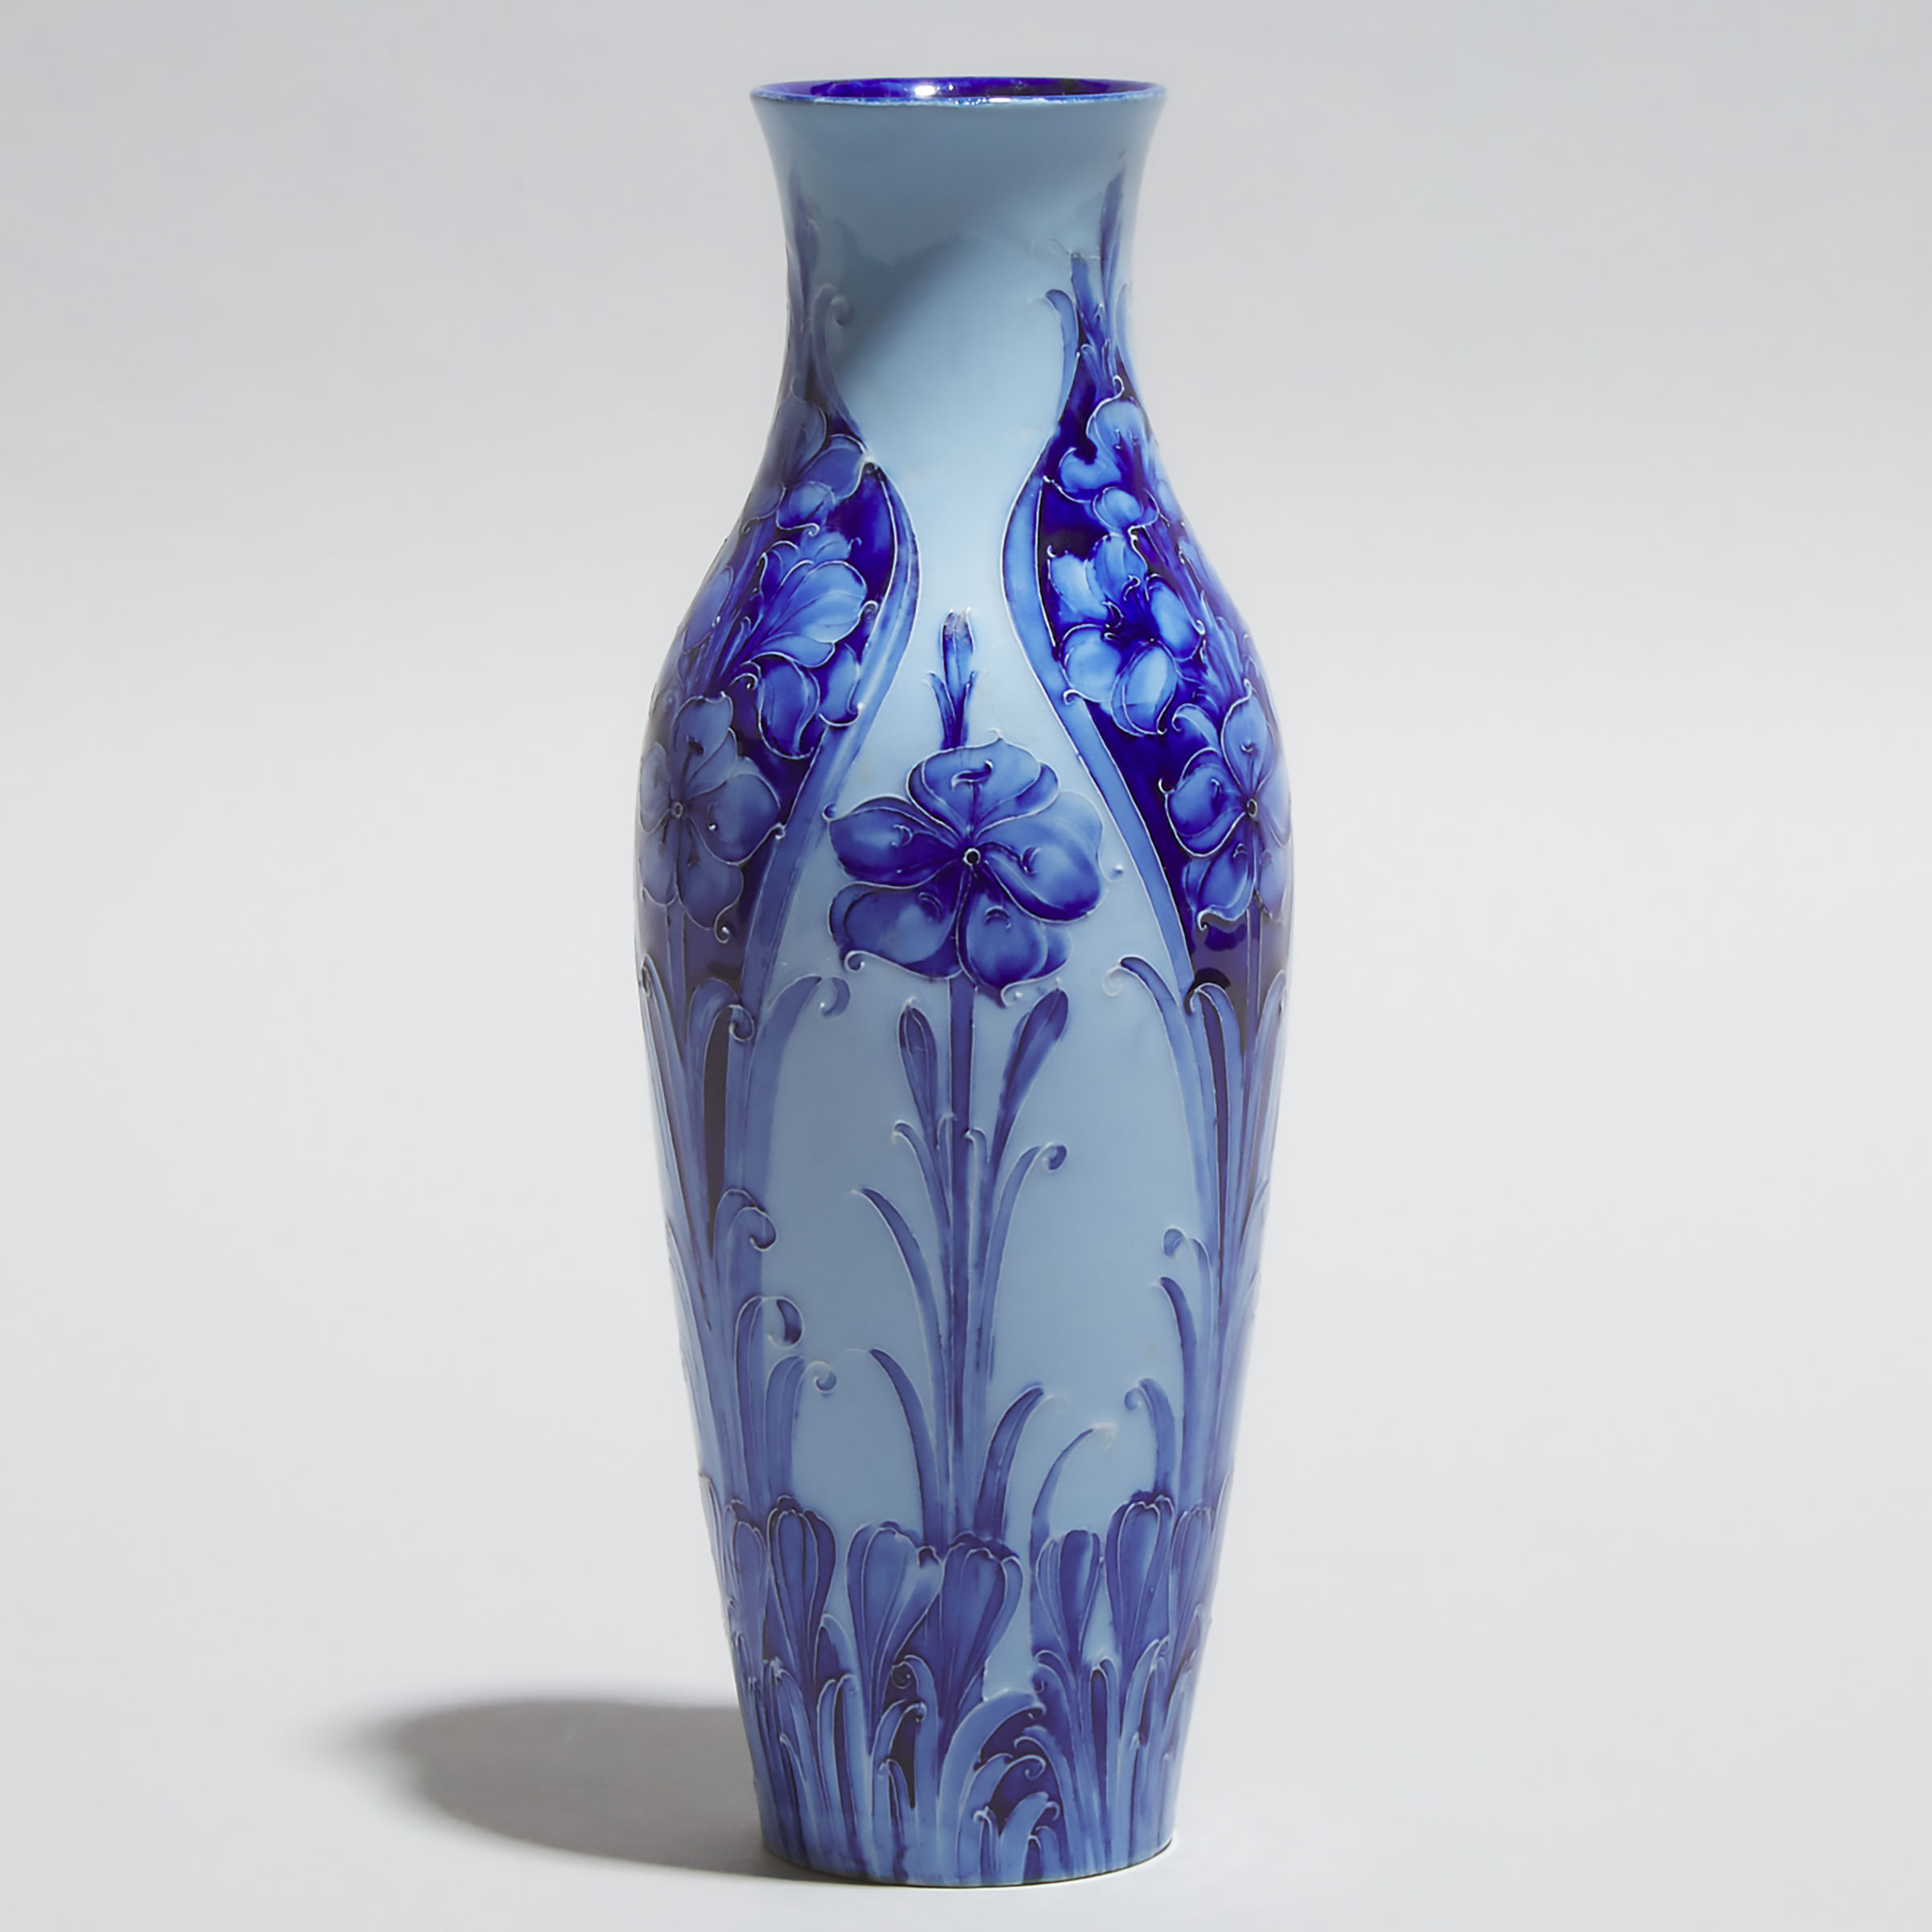 Macintyre Moorcroft Florian Ware Vase, c.1900-05